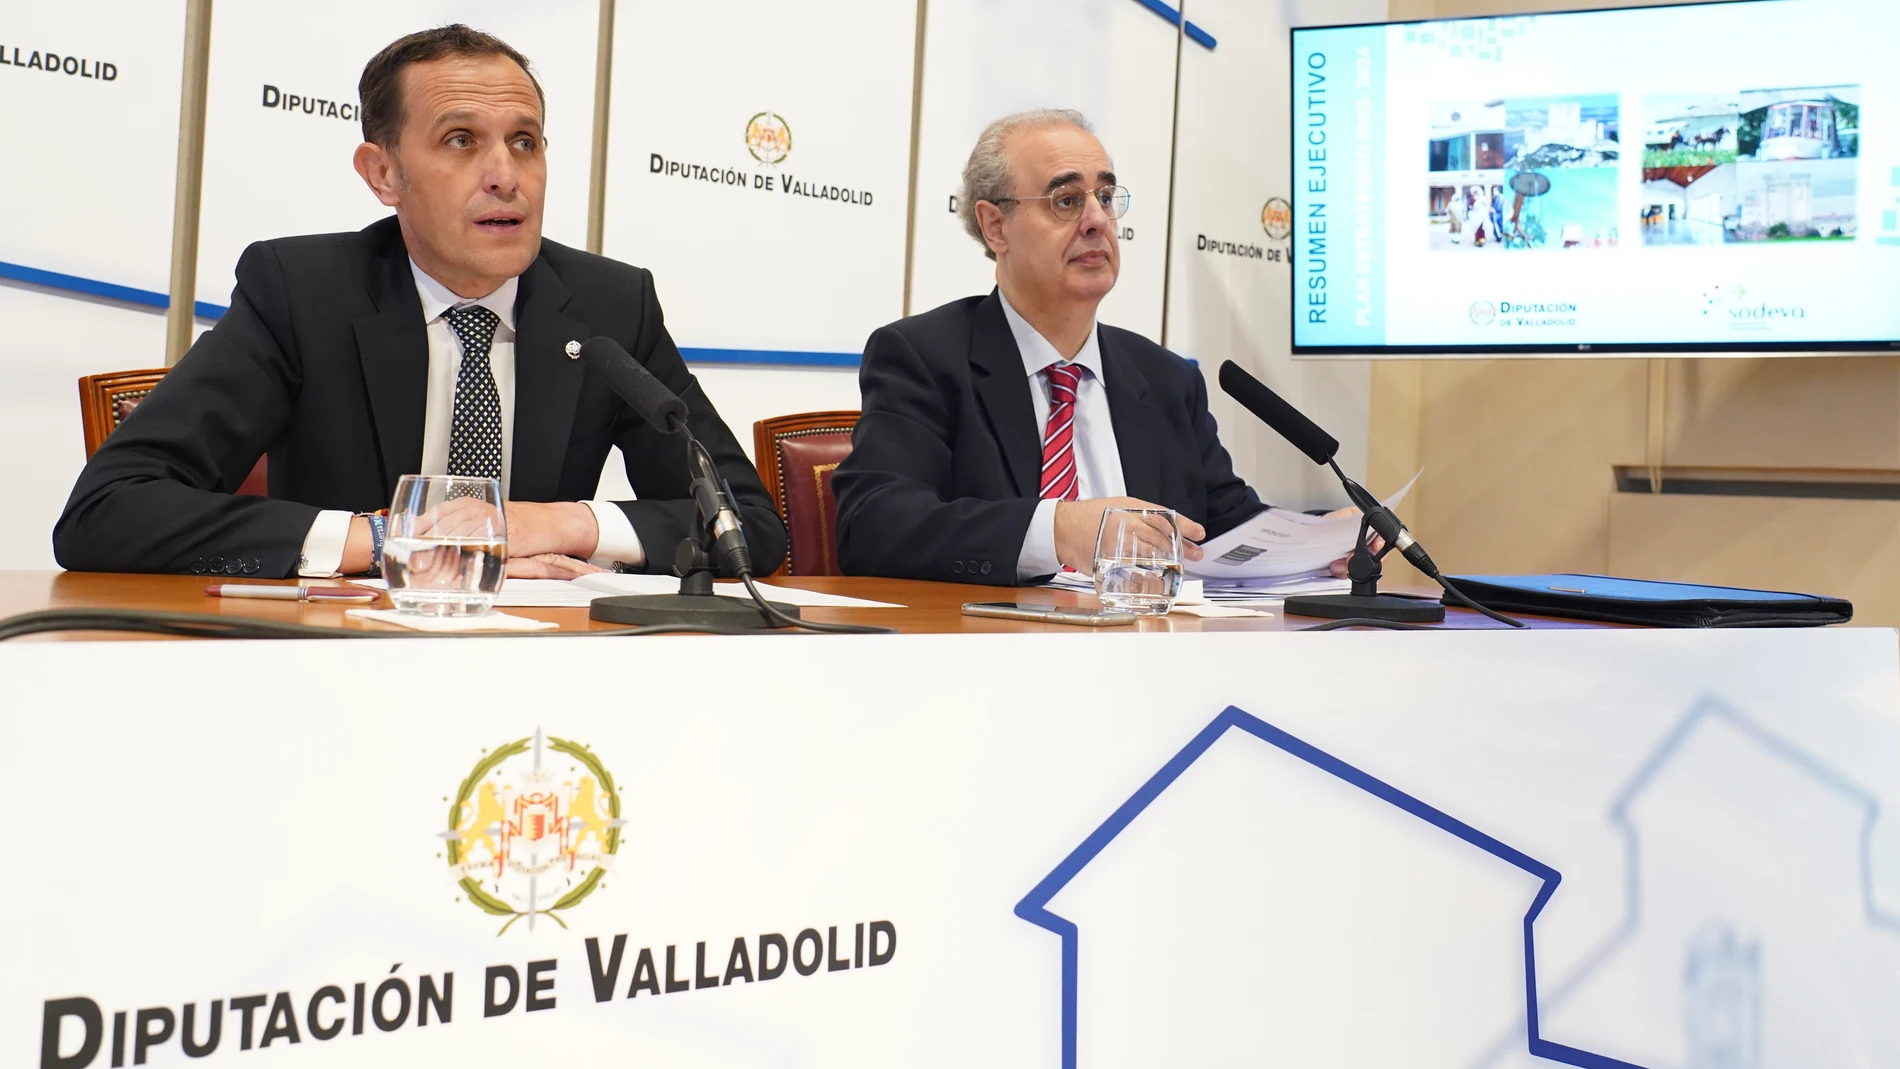 El presidente de la Diputación de Valladolid, Conrado Íscar, y el decano de la Facultad de Comercio, José Antonio Salvador Insúa, han presentado hoy el Plan Estratégico para SODEVA